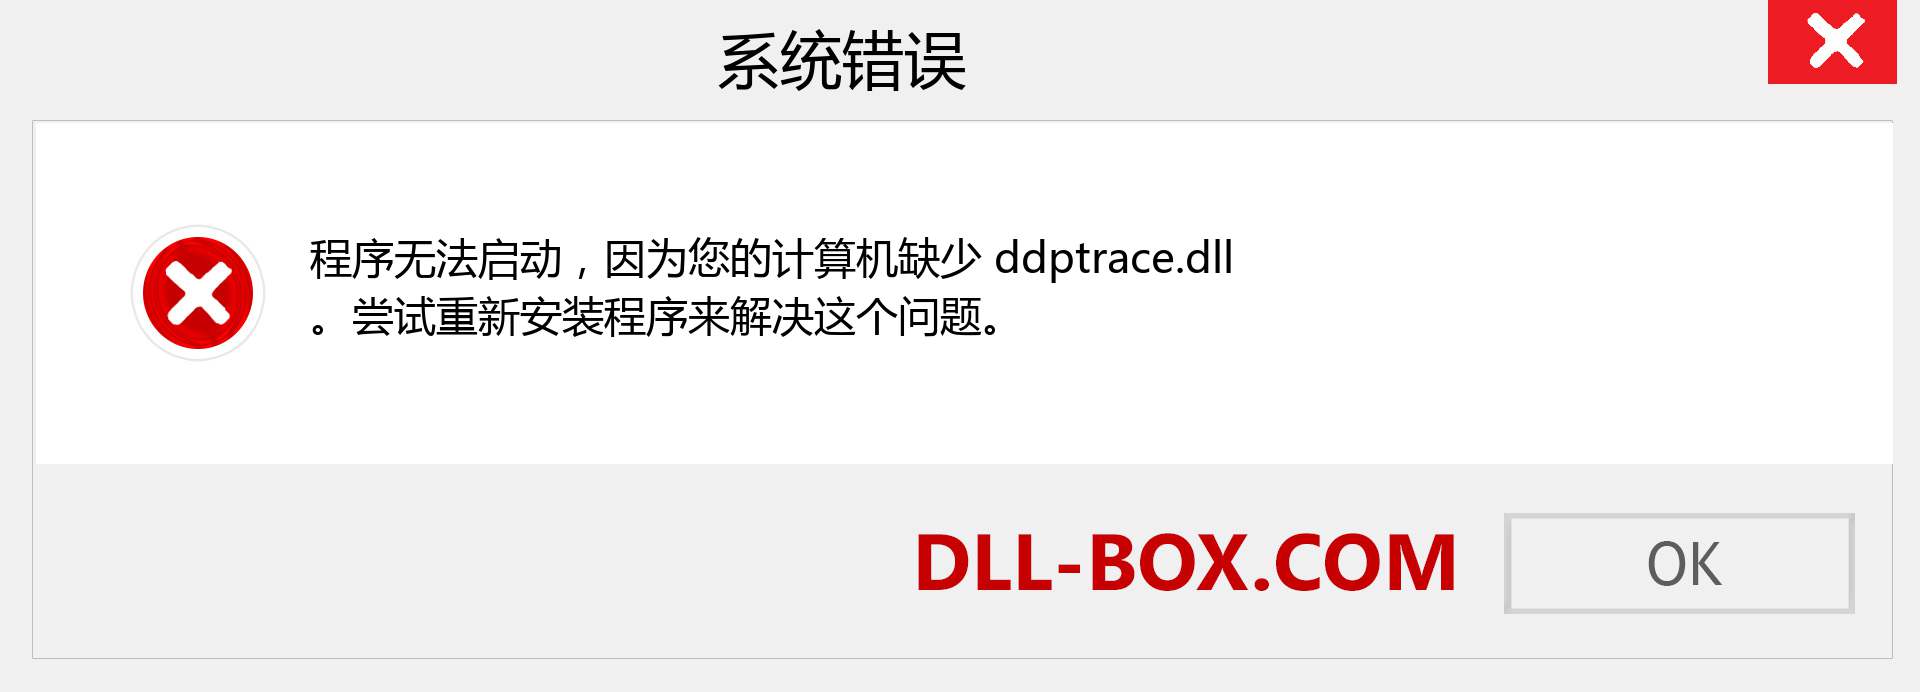 ddptrace.dll 文件丢失？。 适用于 Windows 7、8、10 的下载 - 修复 Windows、照片、图像上的 ddptrace dll 丢失错误